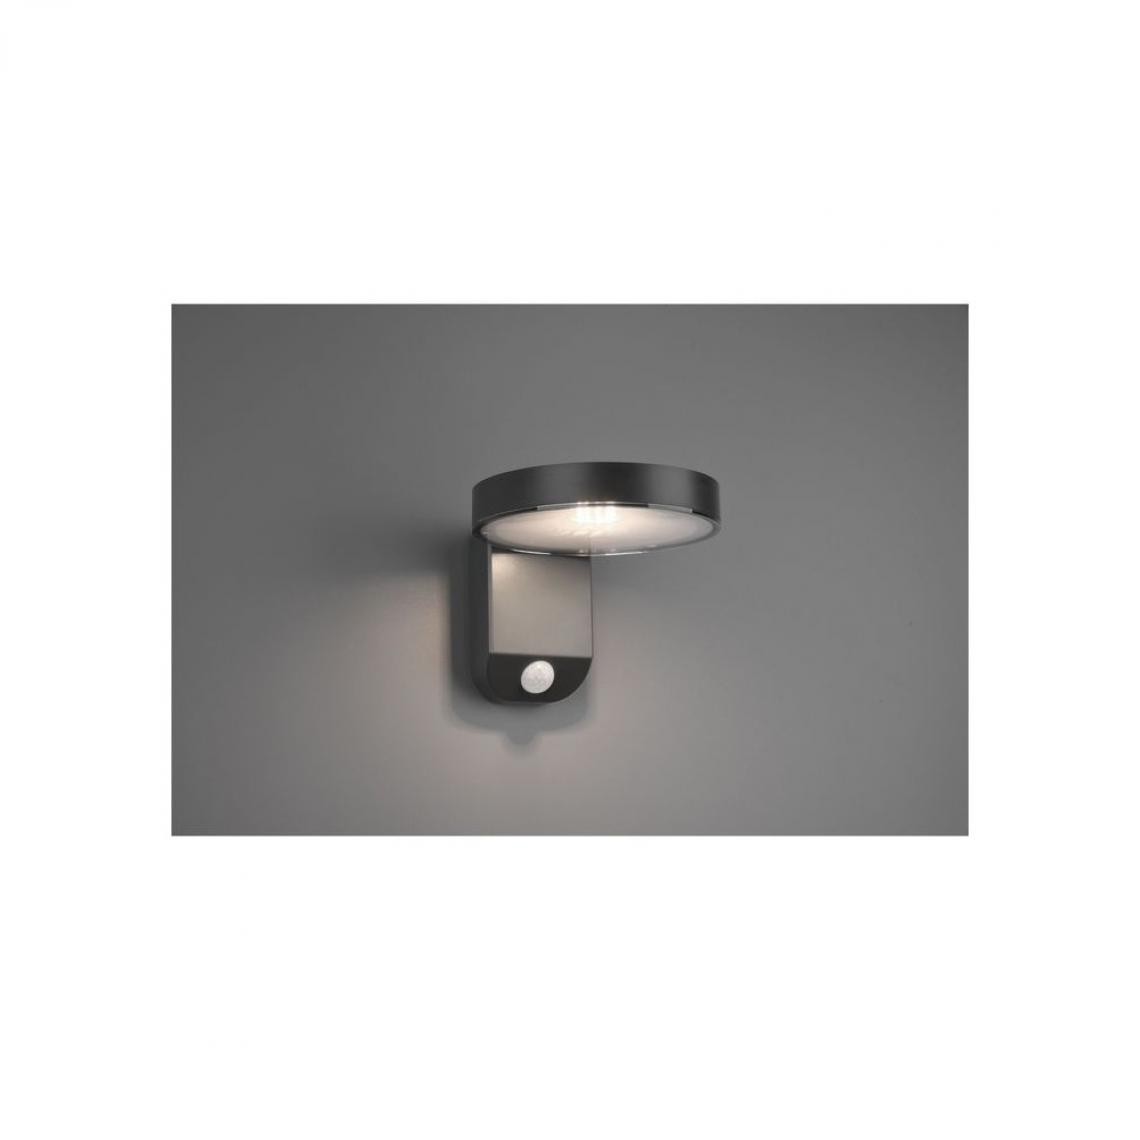 REALITY - Applique Posadas Anthracite 1x5W SMD LED - Applique, hublot